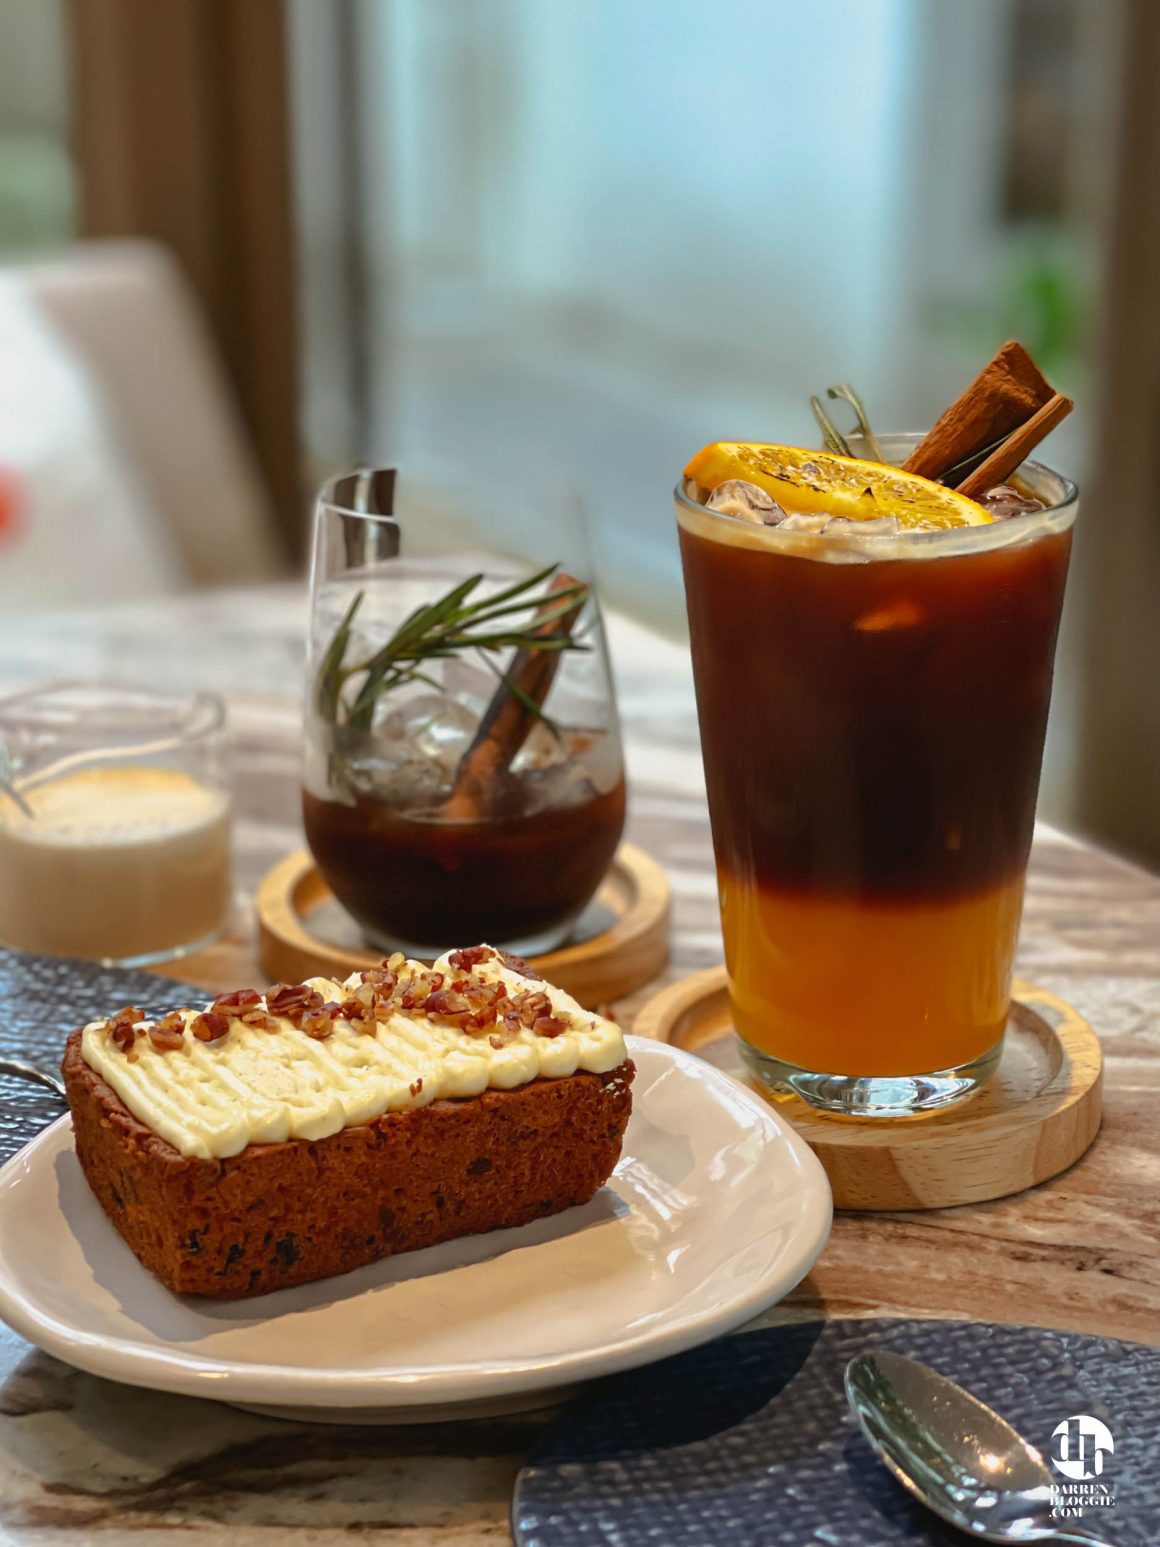 Babyccino-cafe-Bangkok-Thailand-darrenbloggie